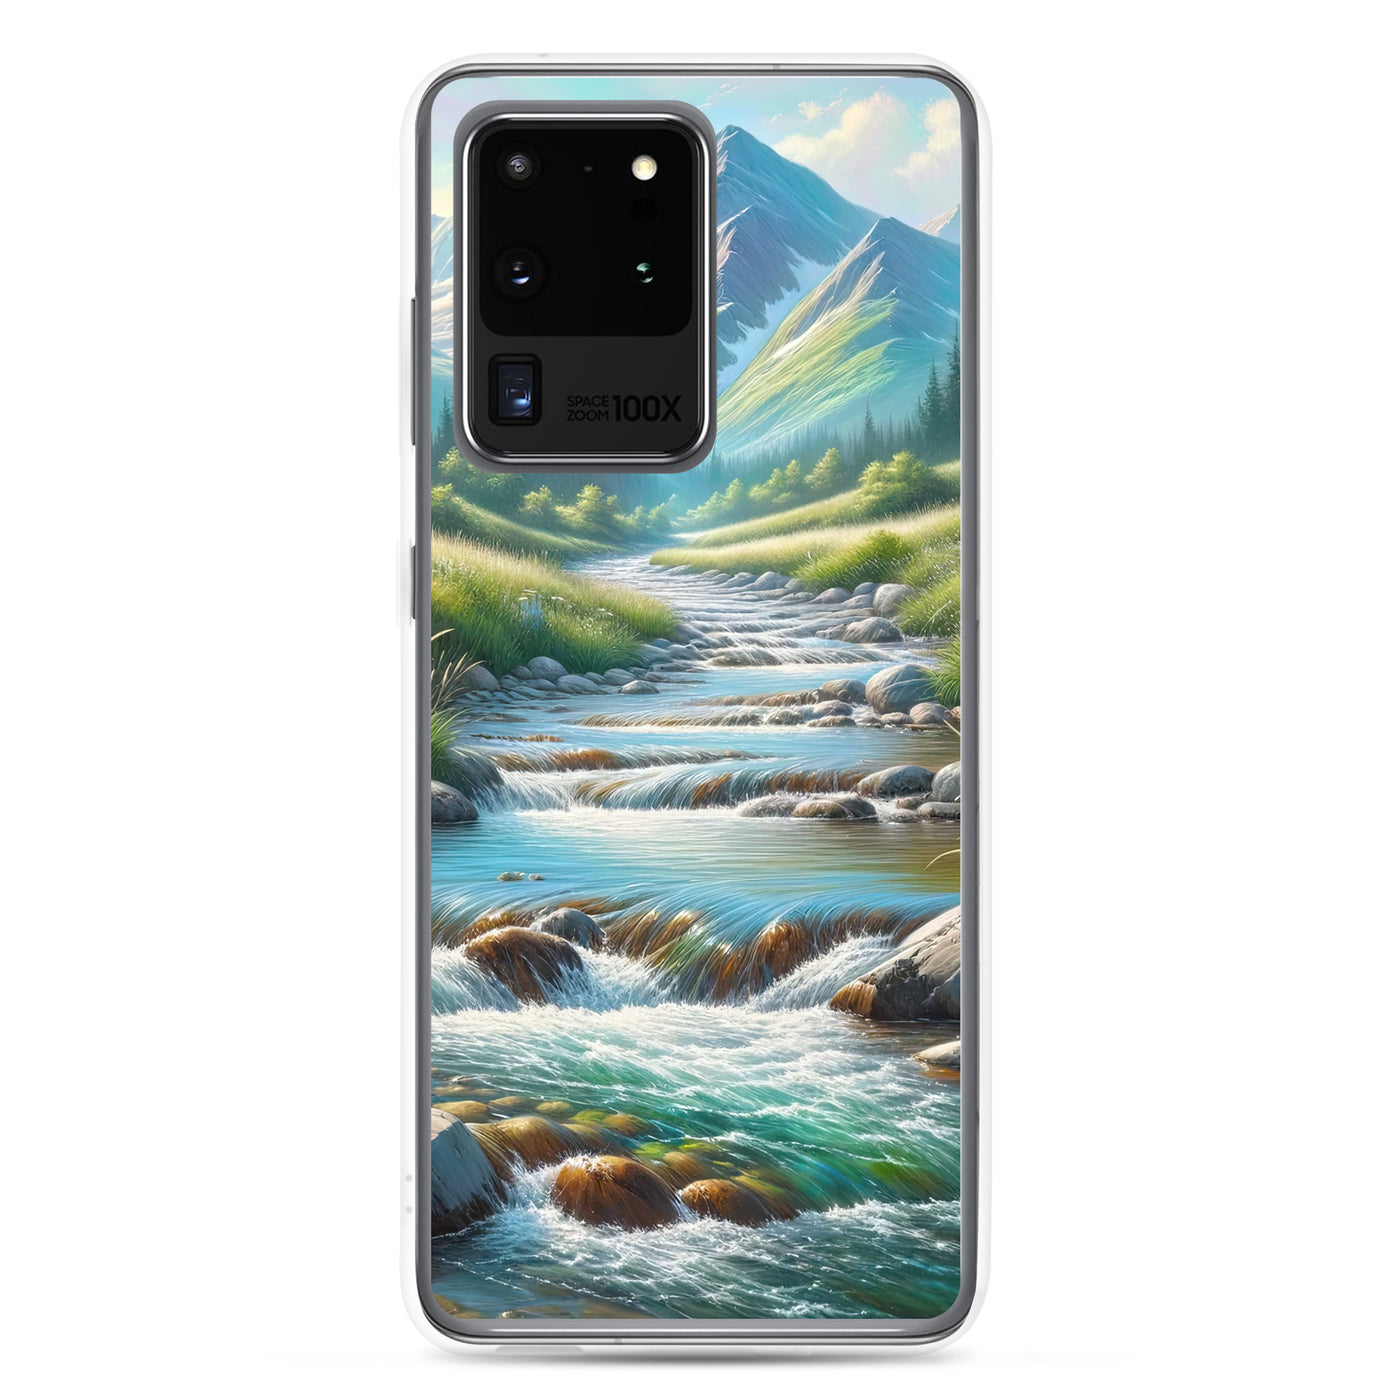 Sanfter Gebirgsbach in Ölgemälde, klares Wasser über glatten Felsen - Samsung Schutzhülle (durchsichtig) berge xxx yyy zzz Samsung Galaxy S20 Ultra